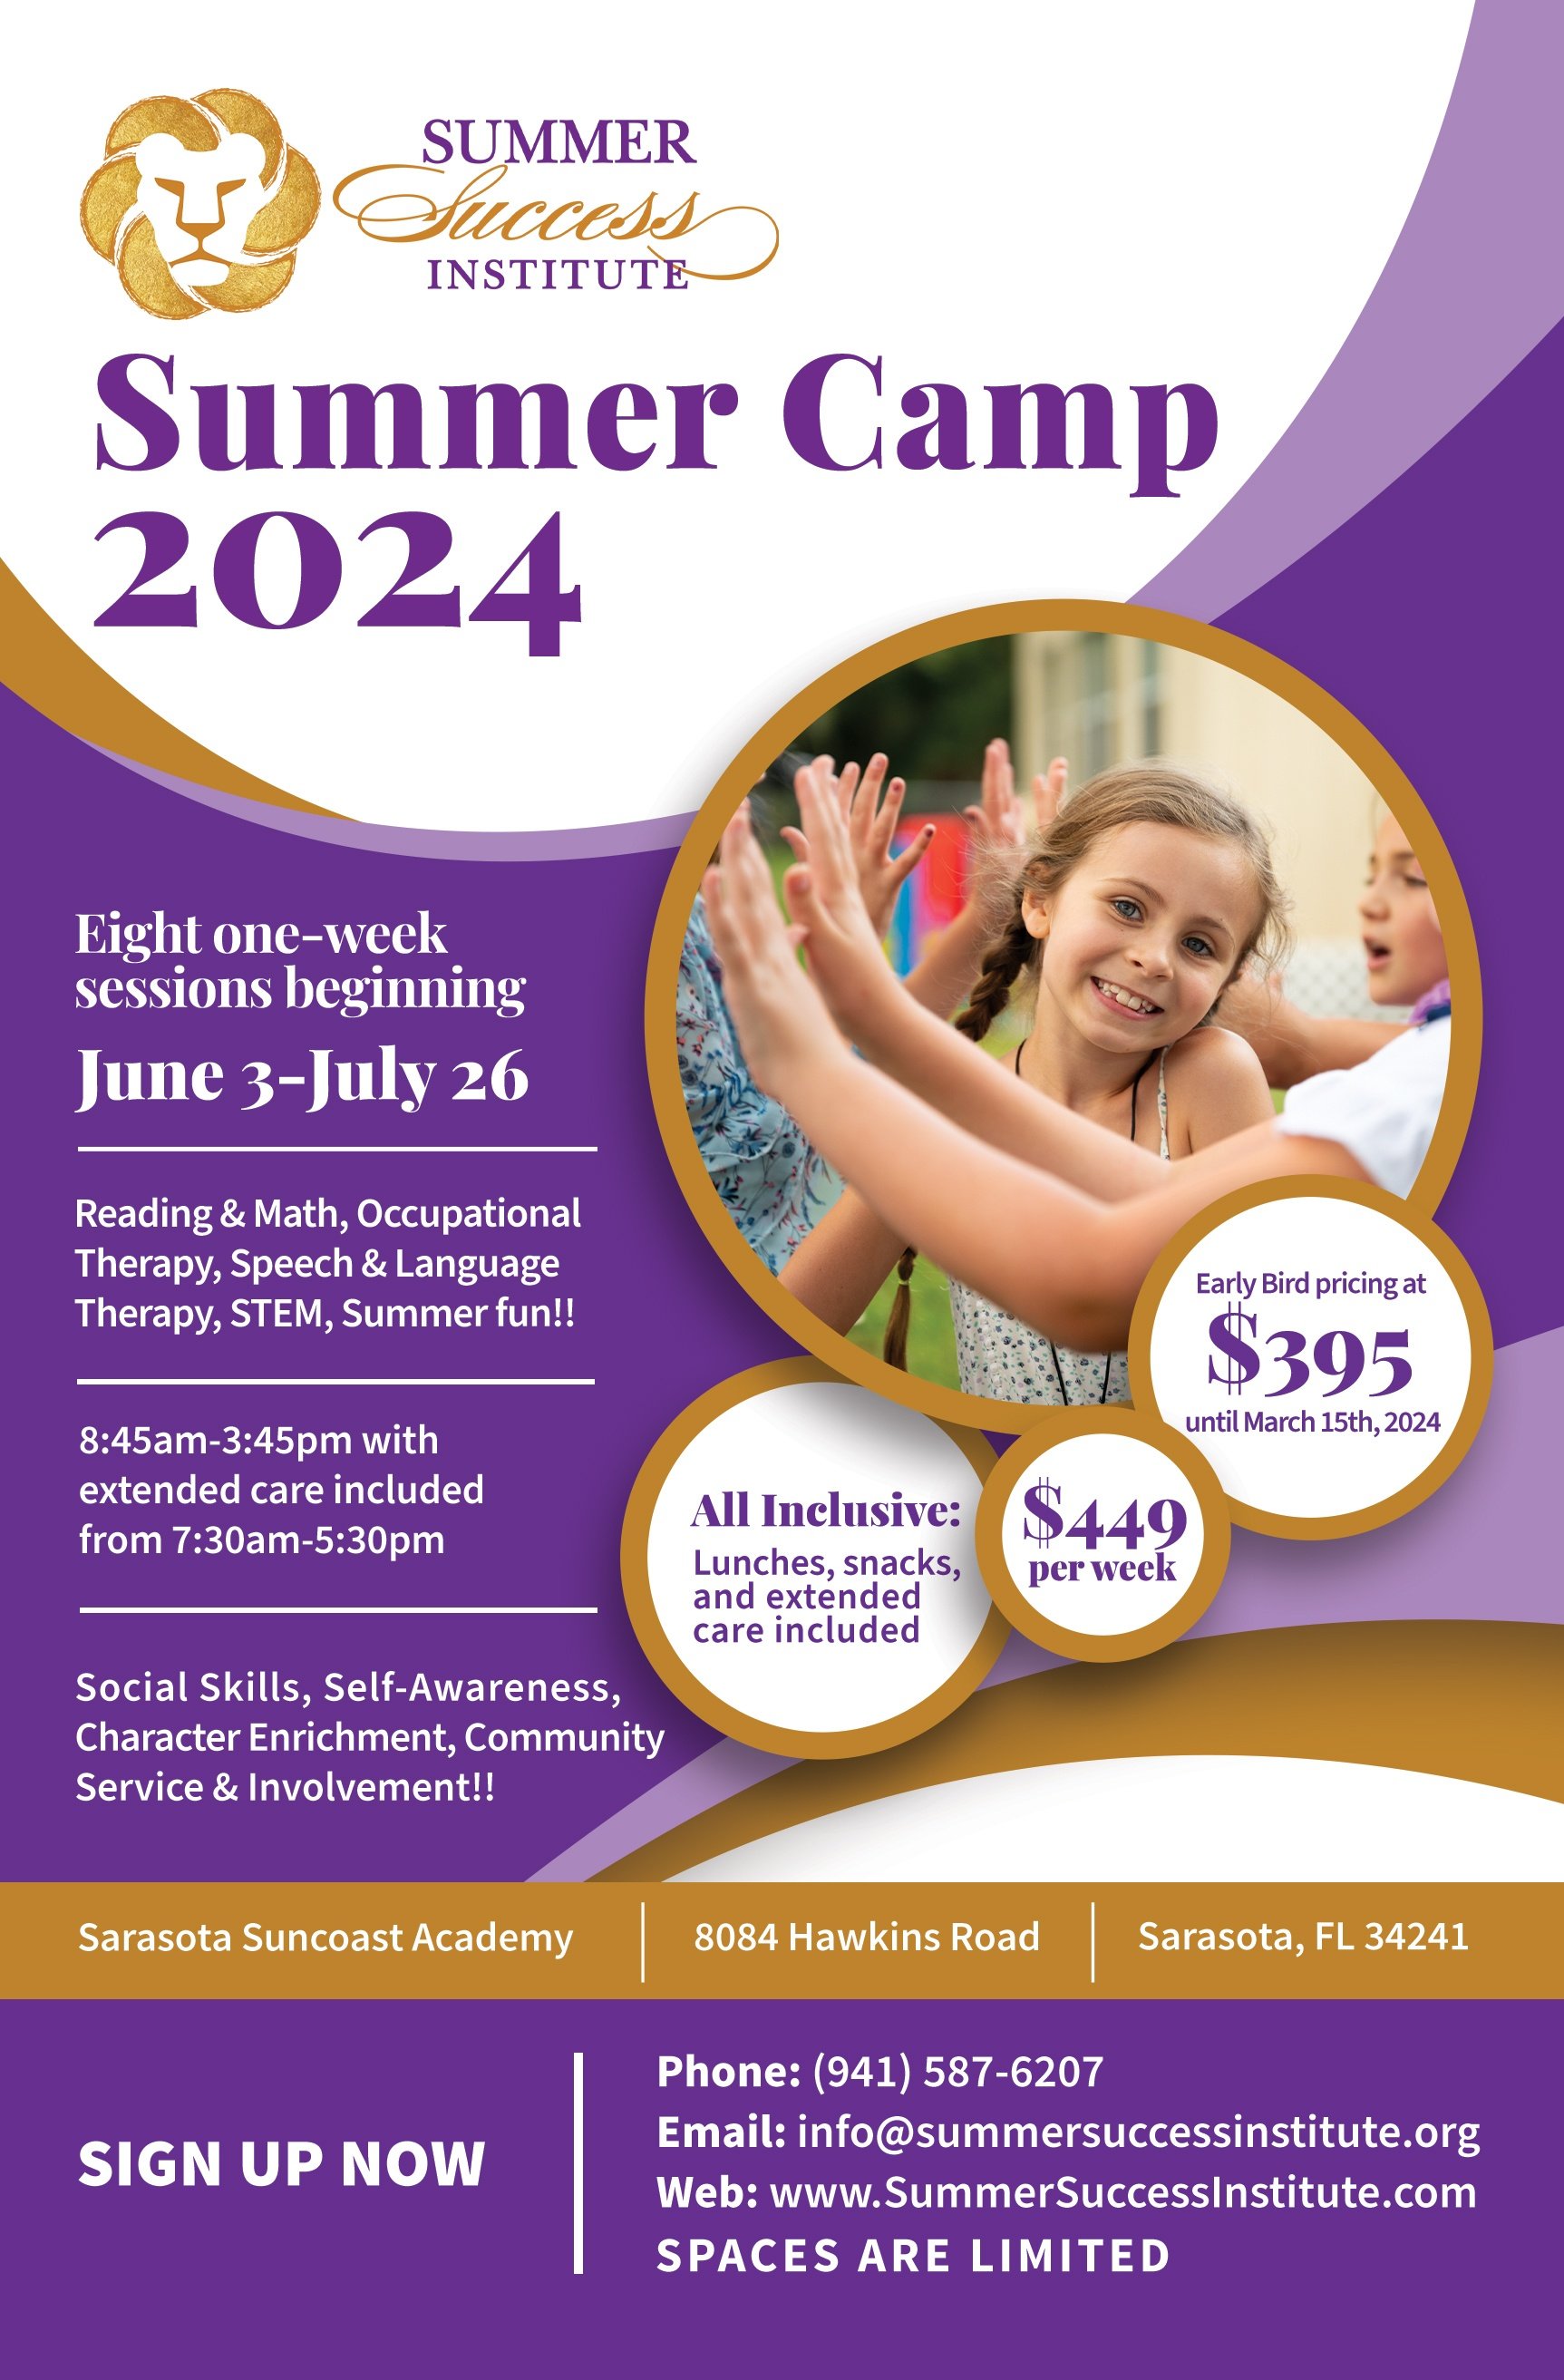 Summer Success Institute - Summer Camp - Sarasota